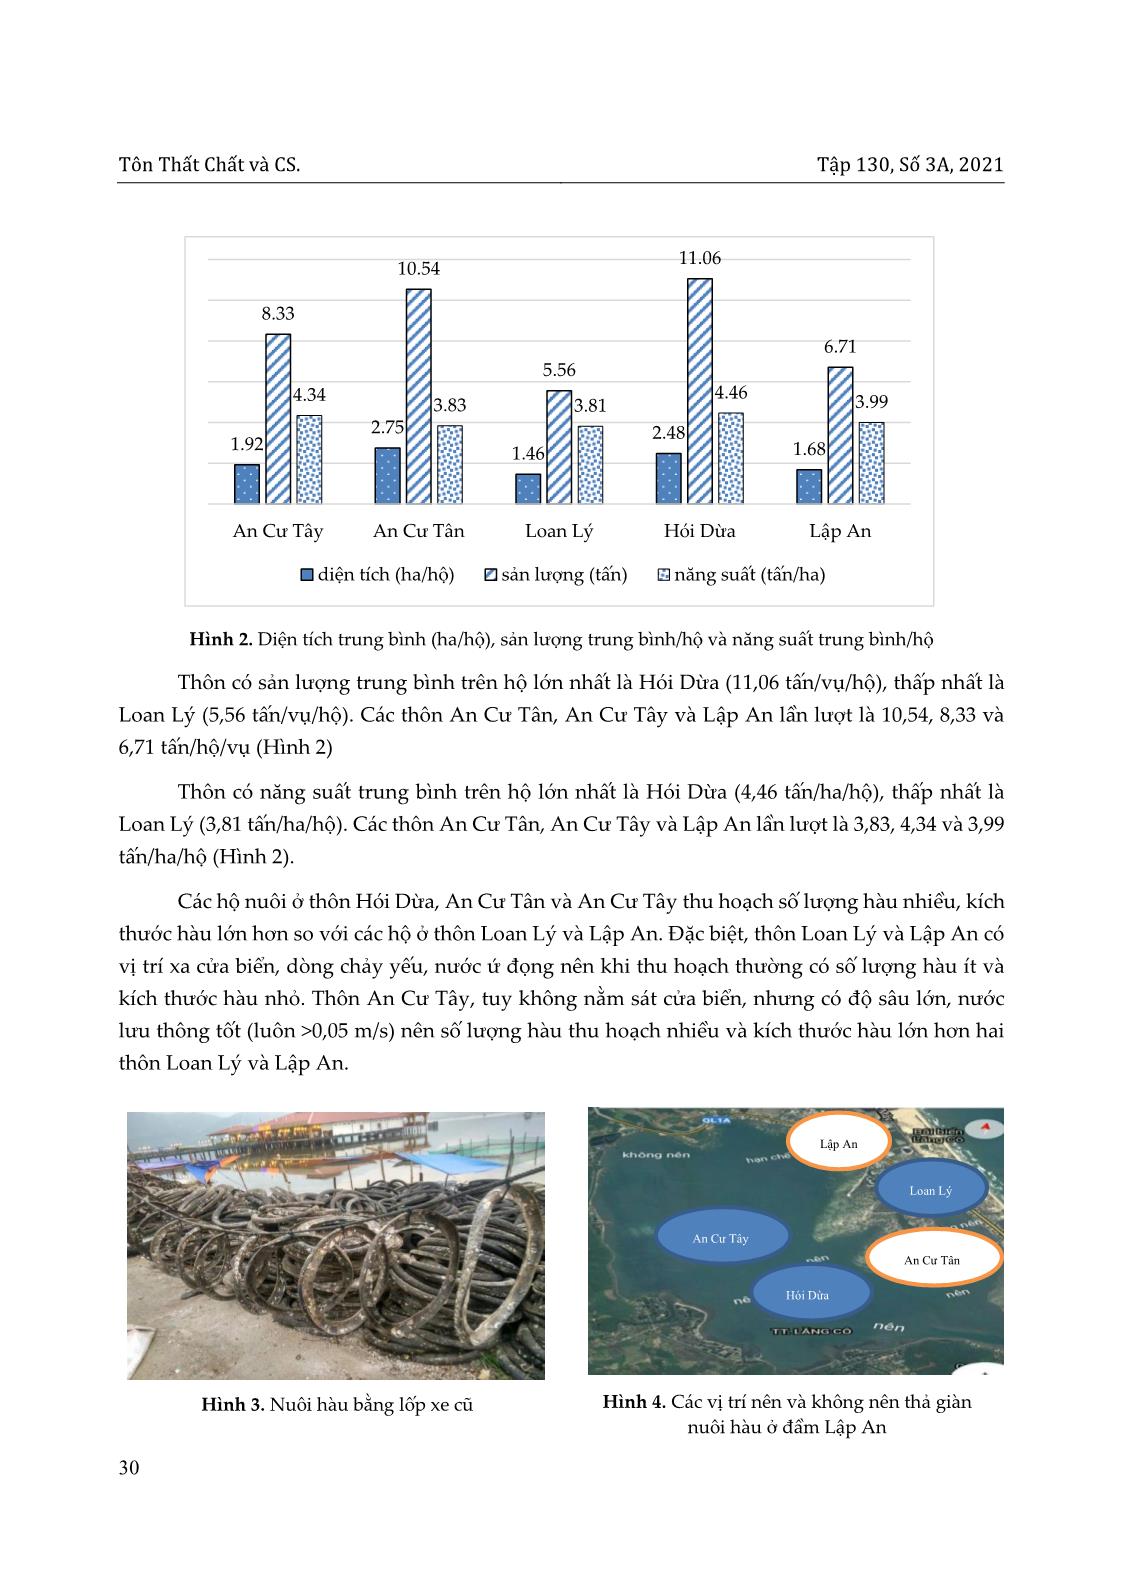 Hiện trạng nuôi hàu tại đầm Lập an, thị trấn lăng cô huyện Phú Lộc, tỉnh Thừa Thiên Huế trang 6